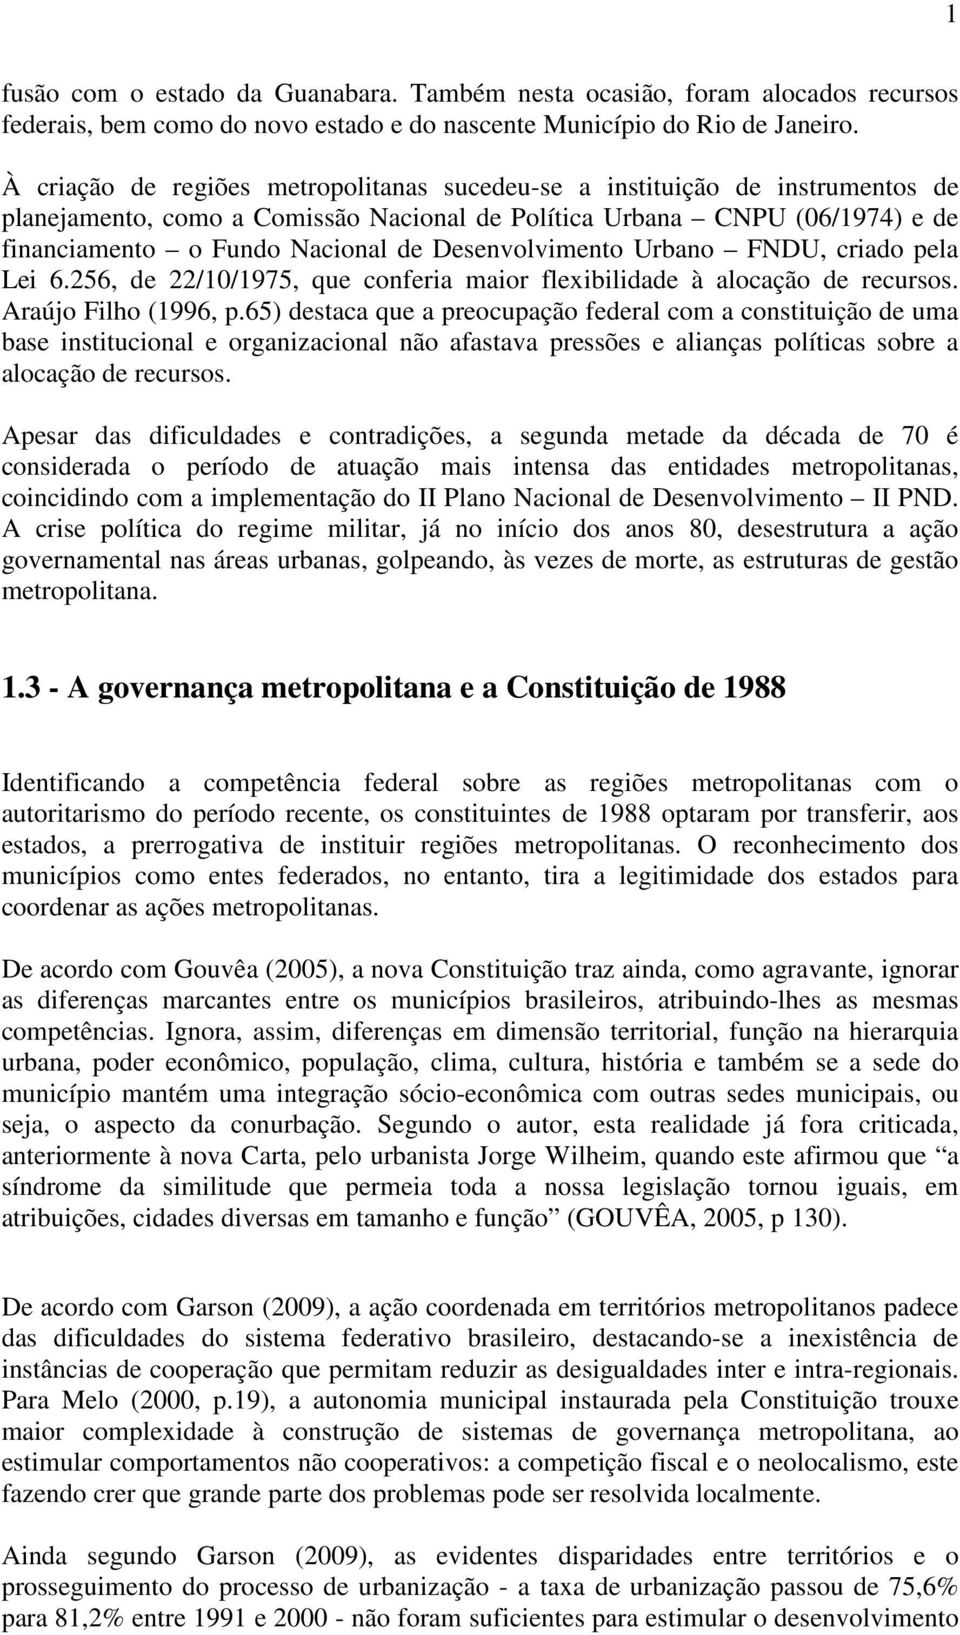 Desenvolvimento Urbano FNDU, criado pela Lei 6.256, de 22/10/1975, que conferia maior flexibilidade à alocação de recursos. Araújo Filho (1996, p.